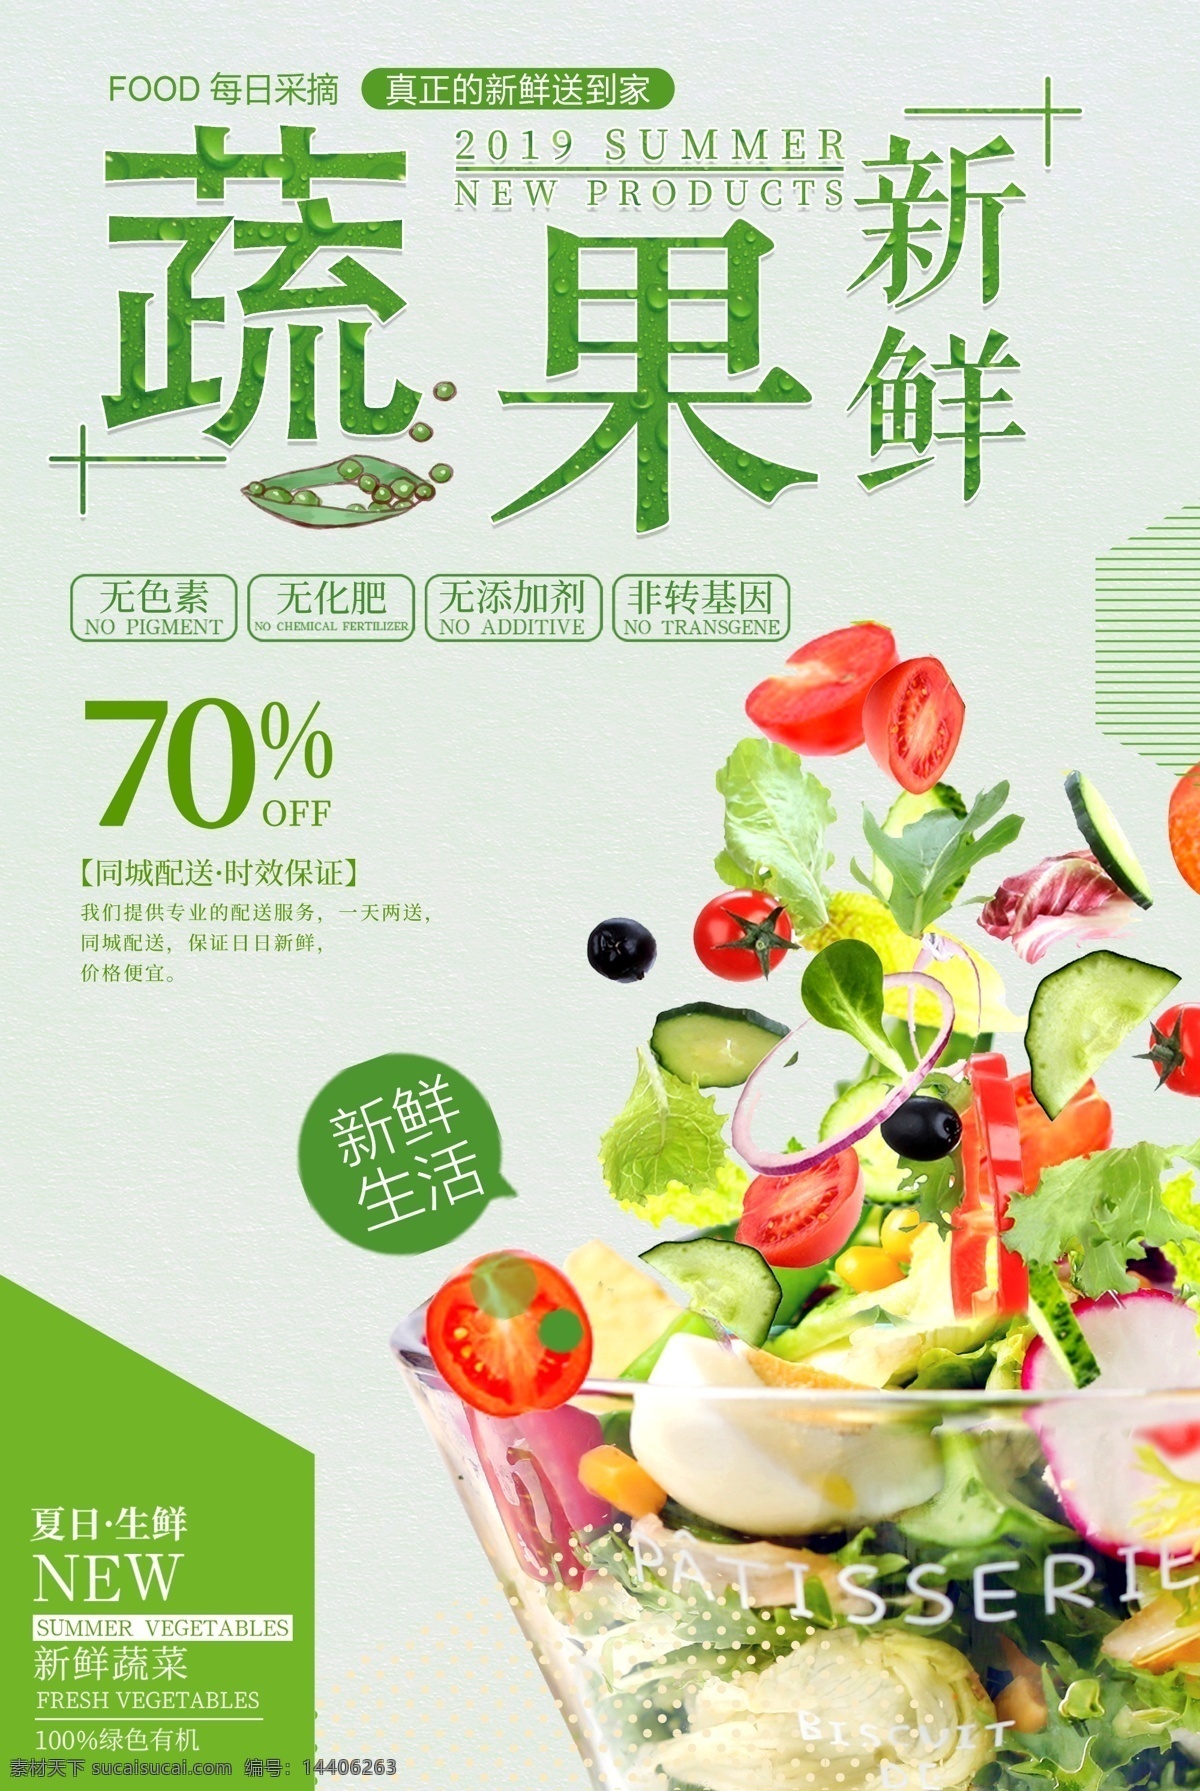 新鲜 果蔬 健康 无公害 蔬菜 时令蔬菜 时蔬 有机蔬菜 果蔬海报设计 纯天然蔬菜 蔬菜海报 新鲜果蔬 促销海报